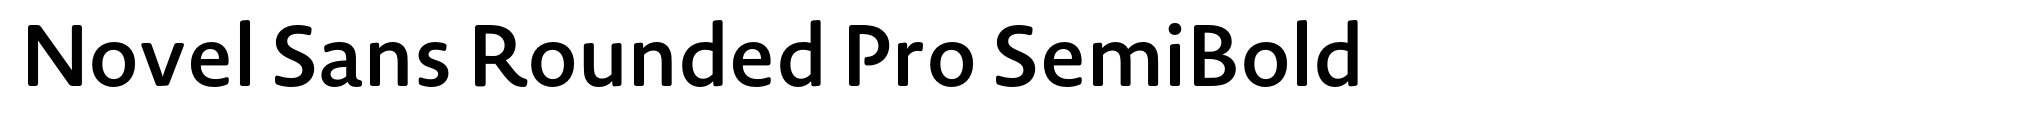 Novel Sans Rounded Pro SemiBold image